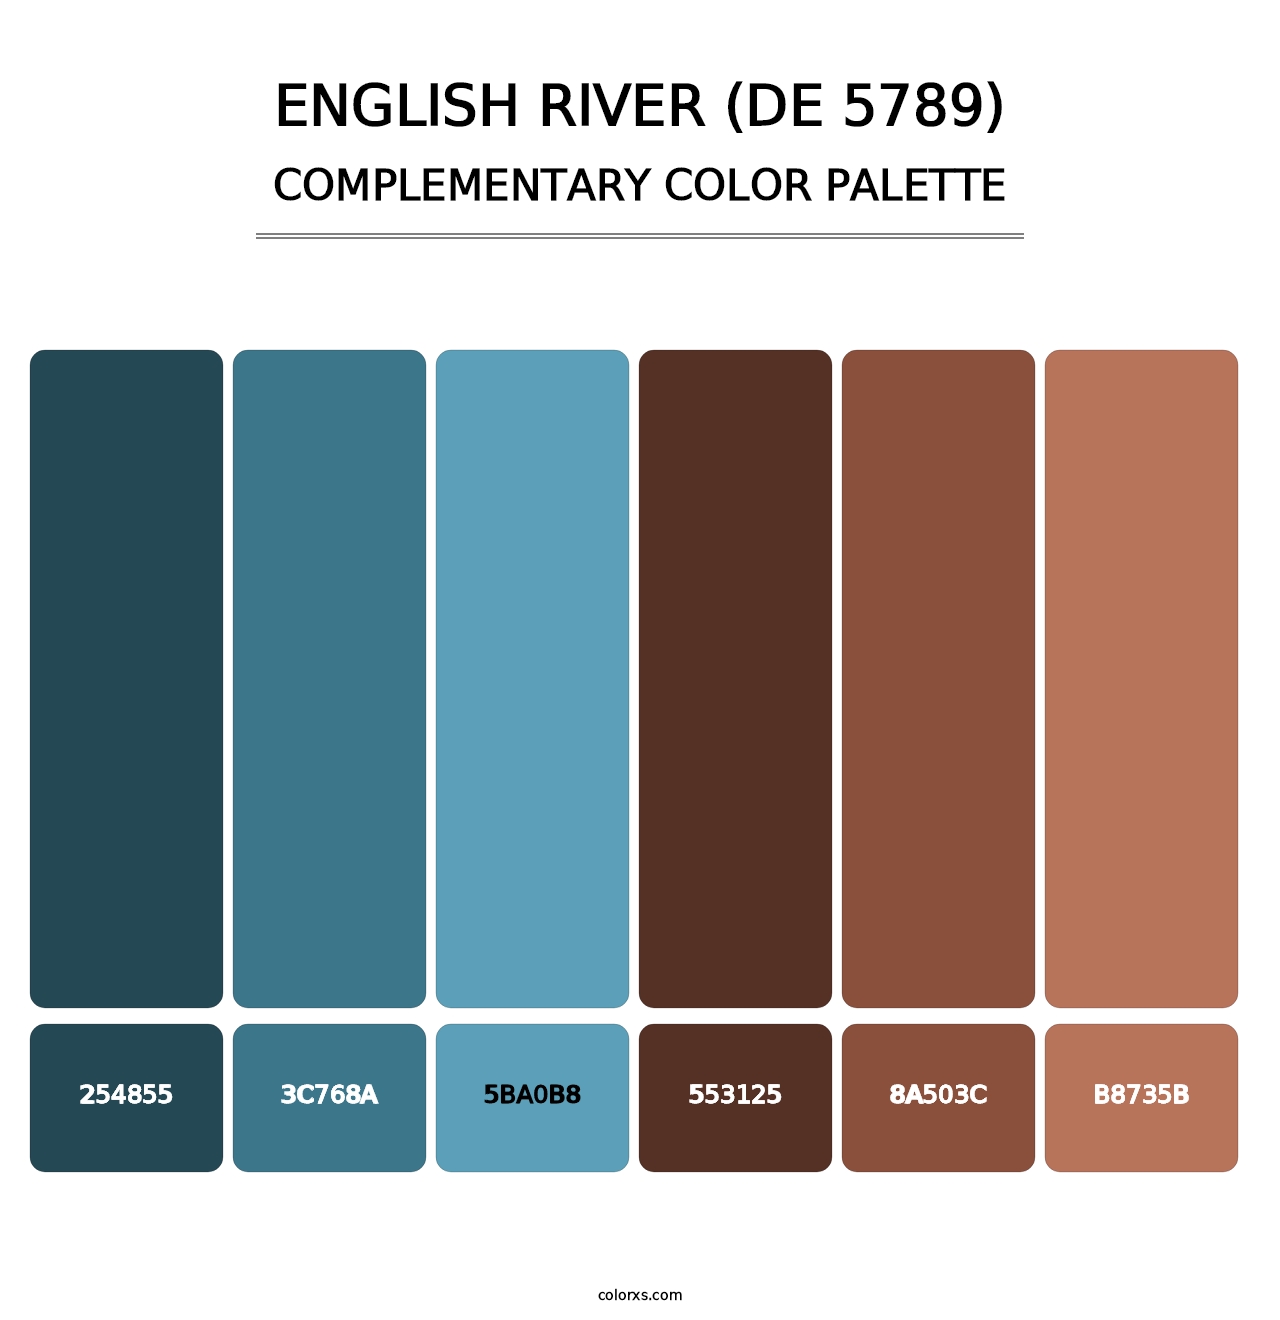 English River (DE 5789) - Complementary Color Palette